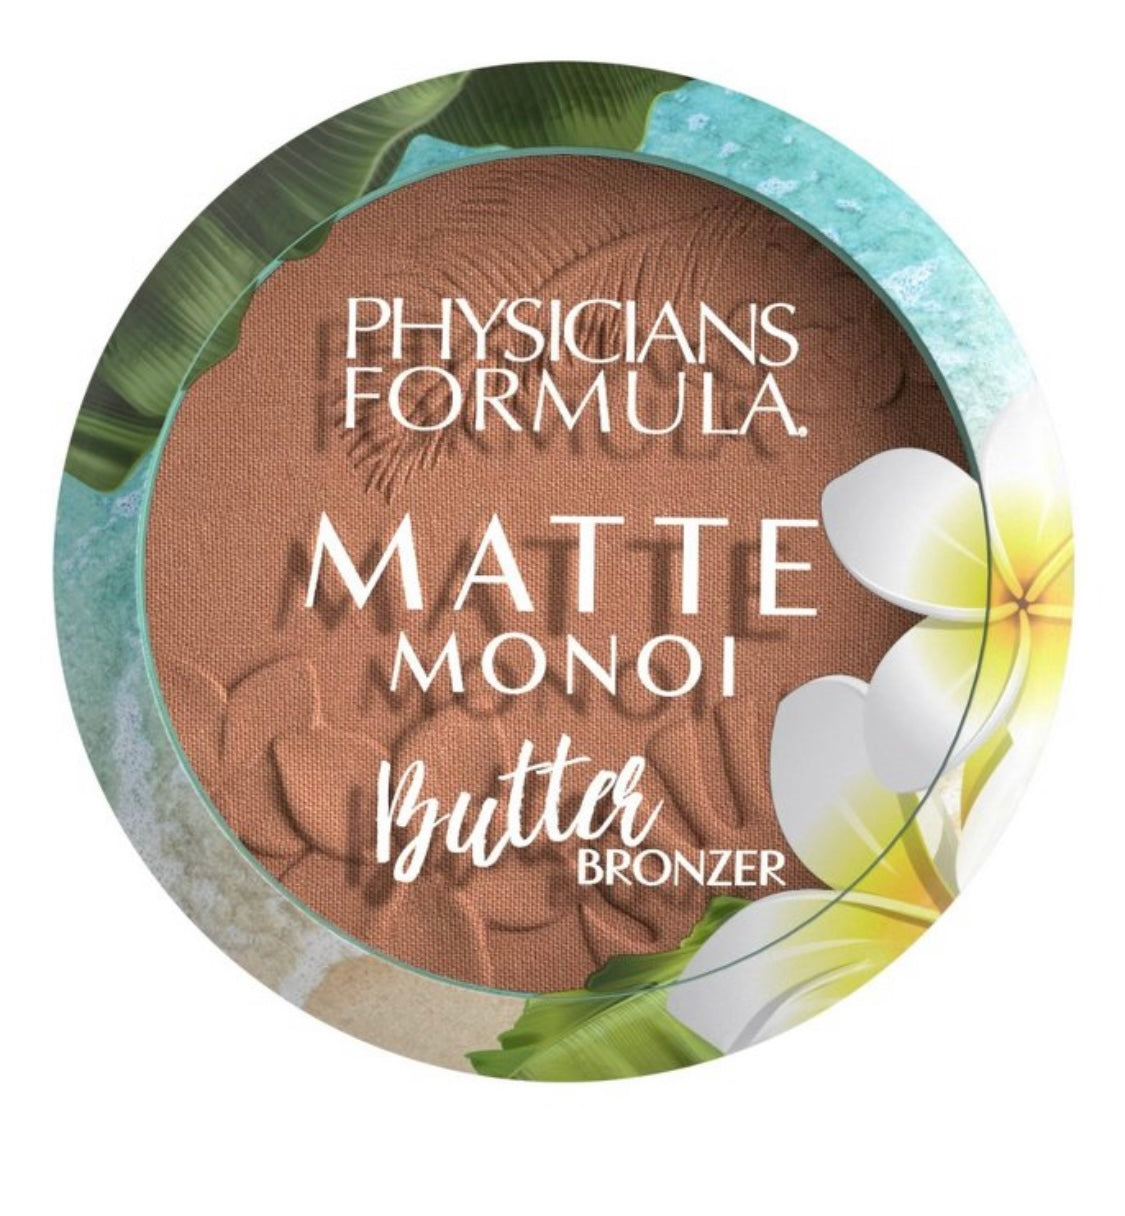 Physicians Fórmula Matte Monoi Butter Bronzer